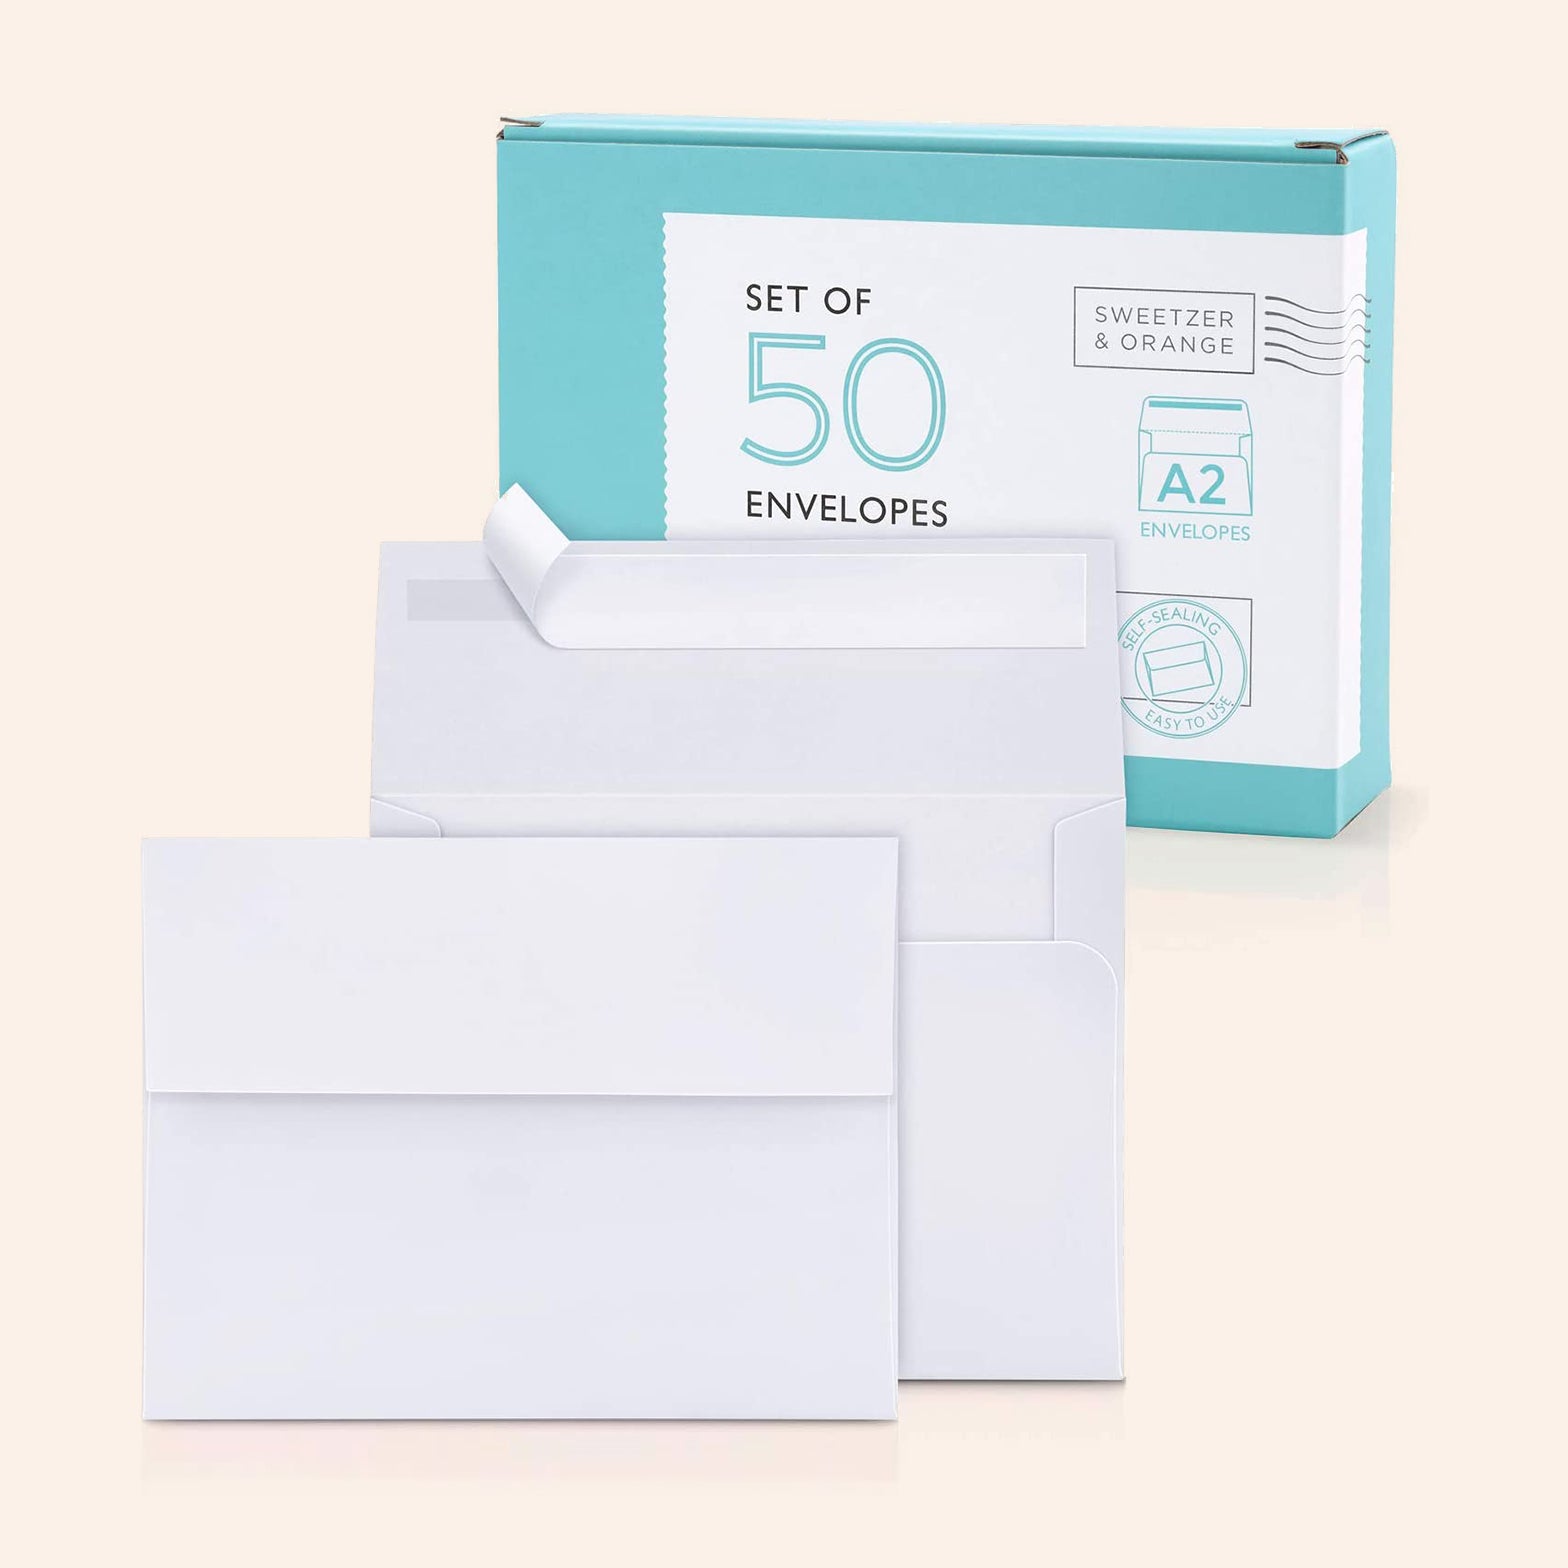 A2 White Envelopes | Set of 50